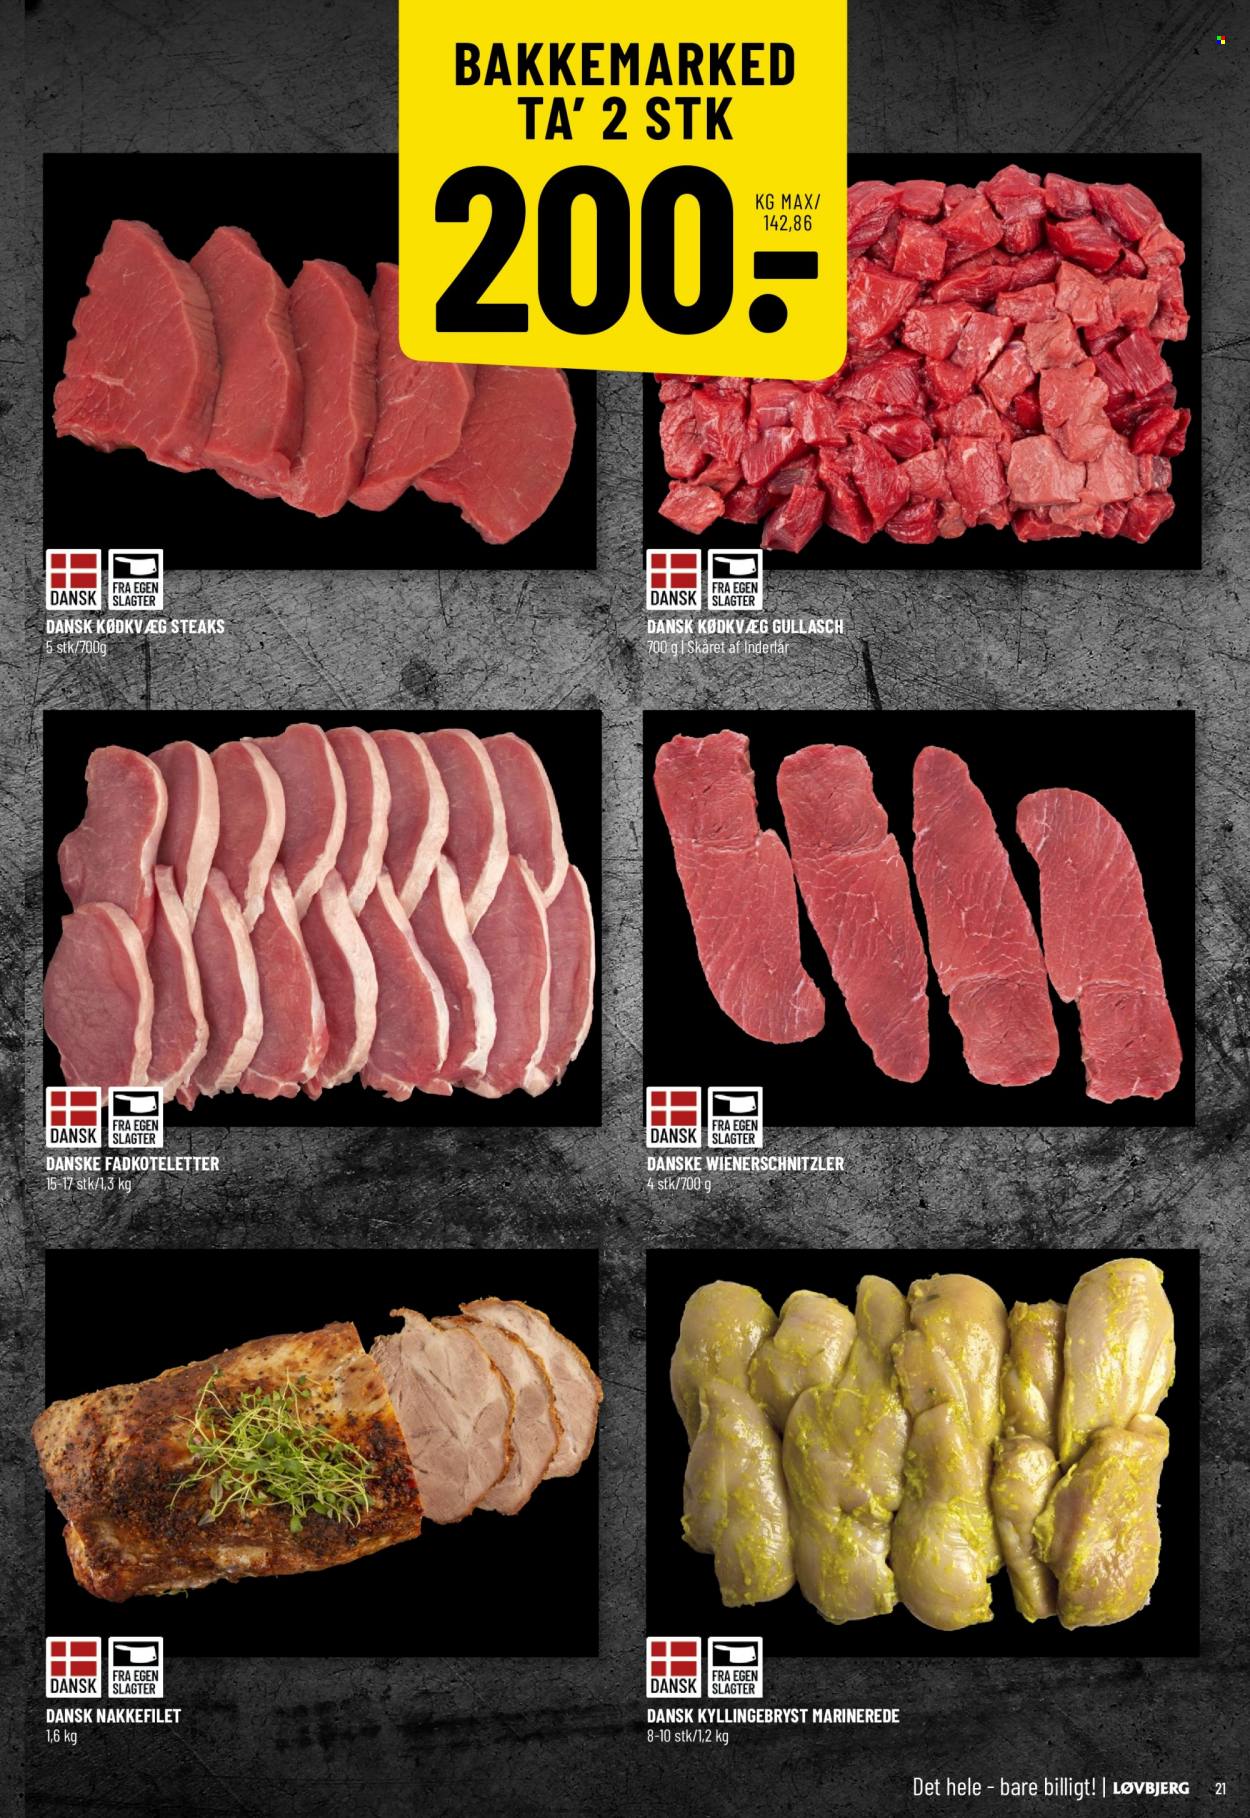 thumbnail - Løvbjerg tilbud  - 3.2.2023 - 9.2.2023 - tilbudsprodukter - koteletter, fadkoteletter, nakkefilet, schnitzel, wienerschnitzler, grisekød, kyllingebryst. Side 21.